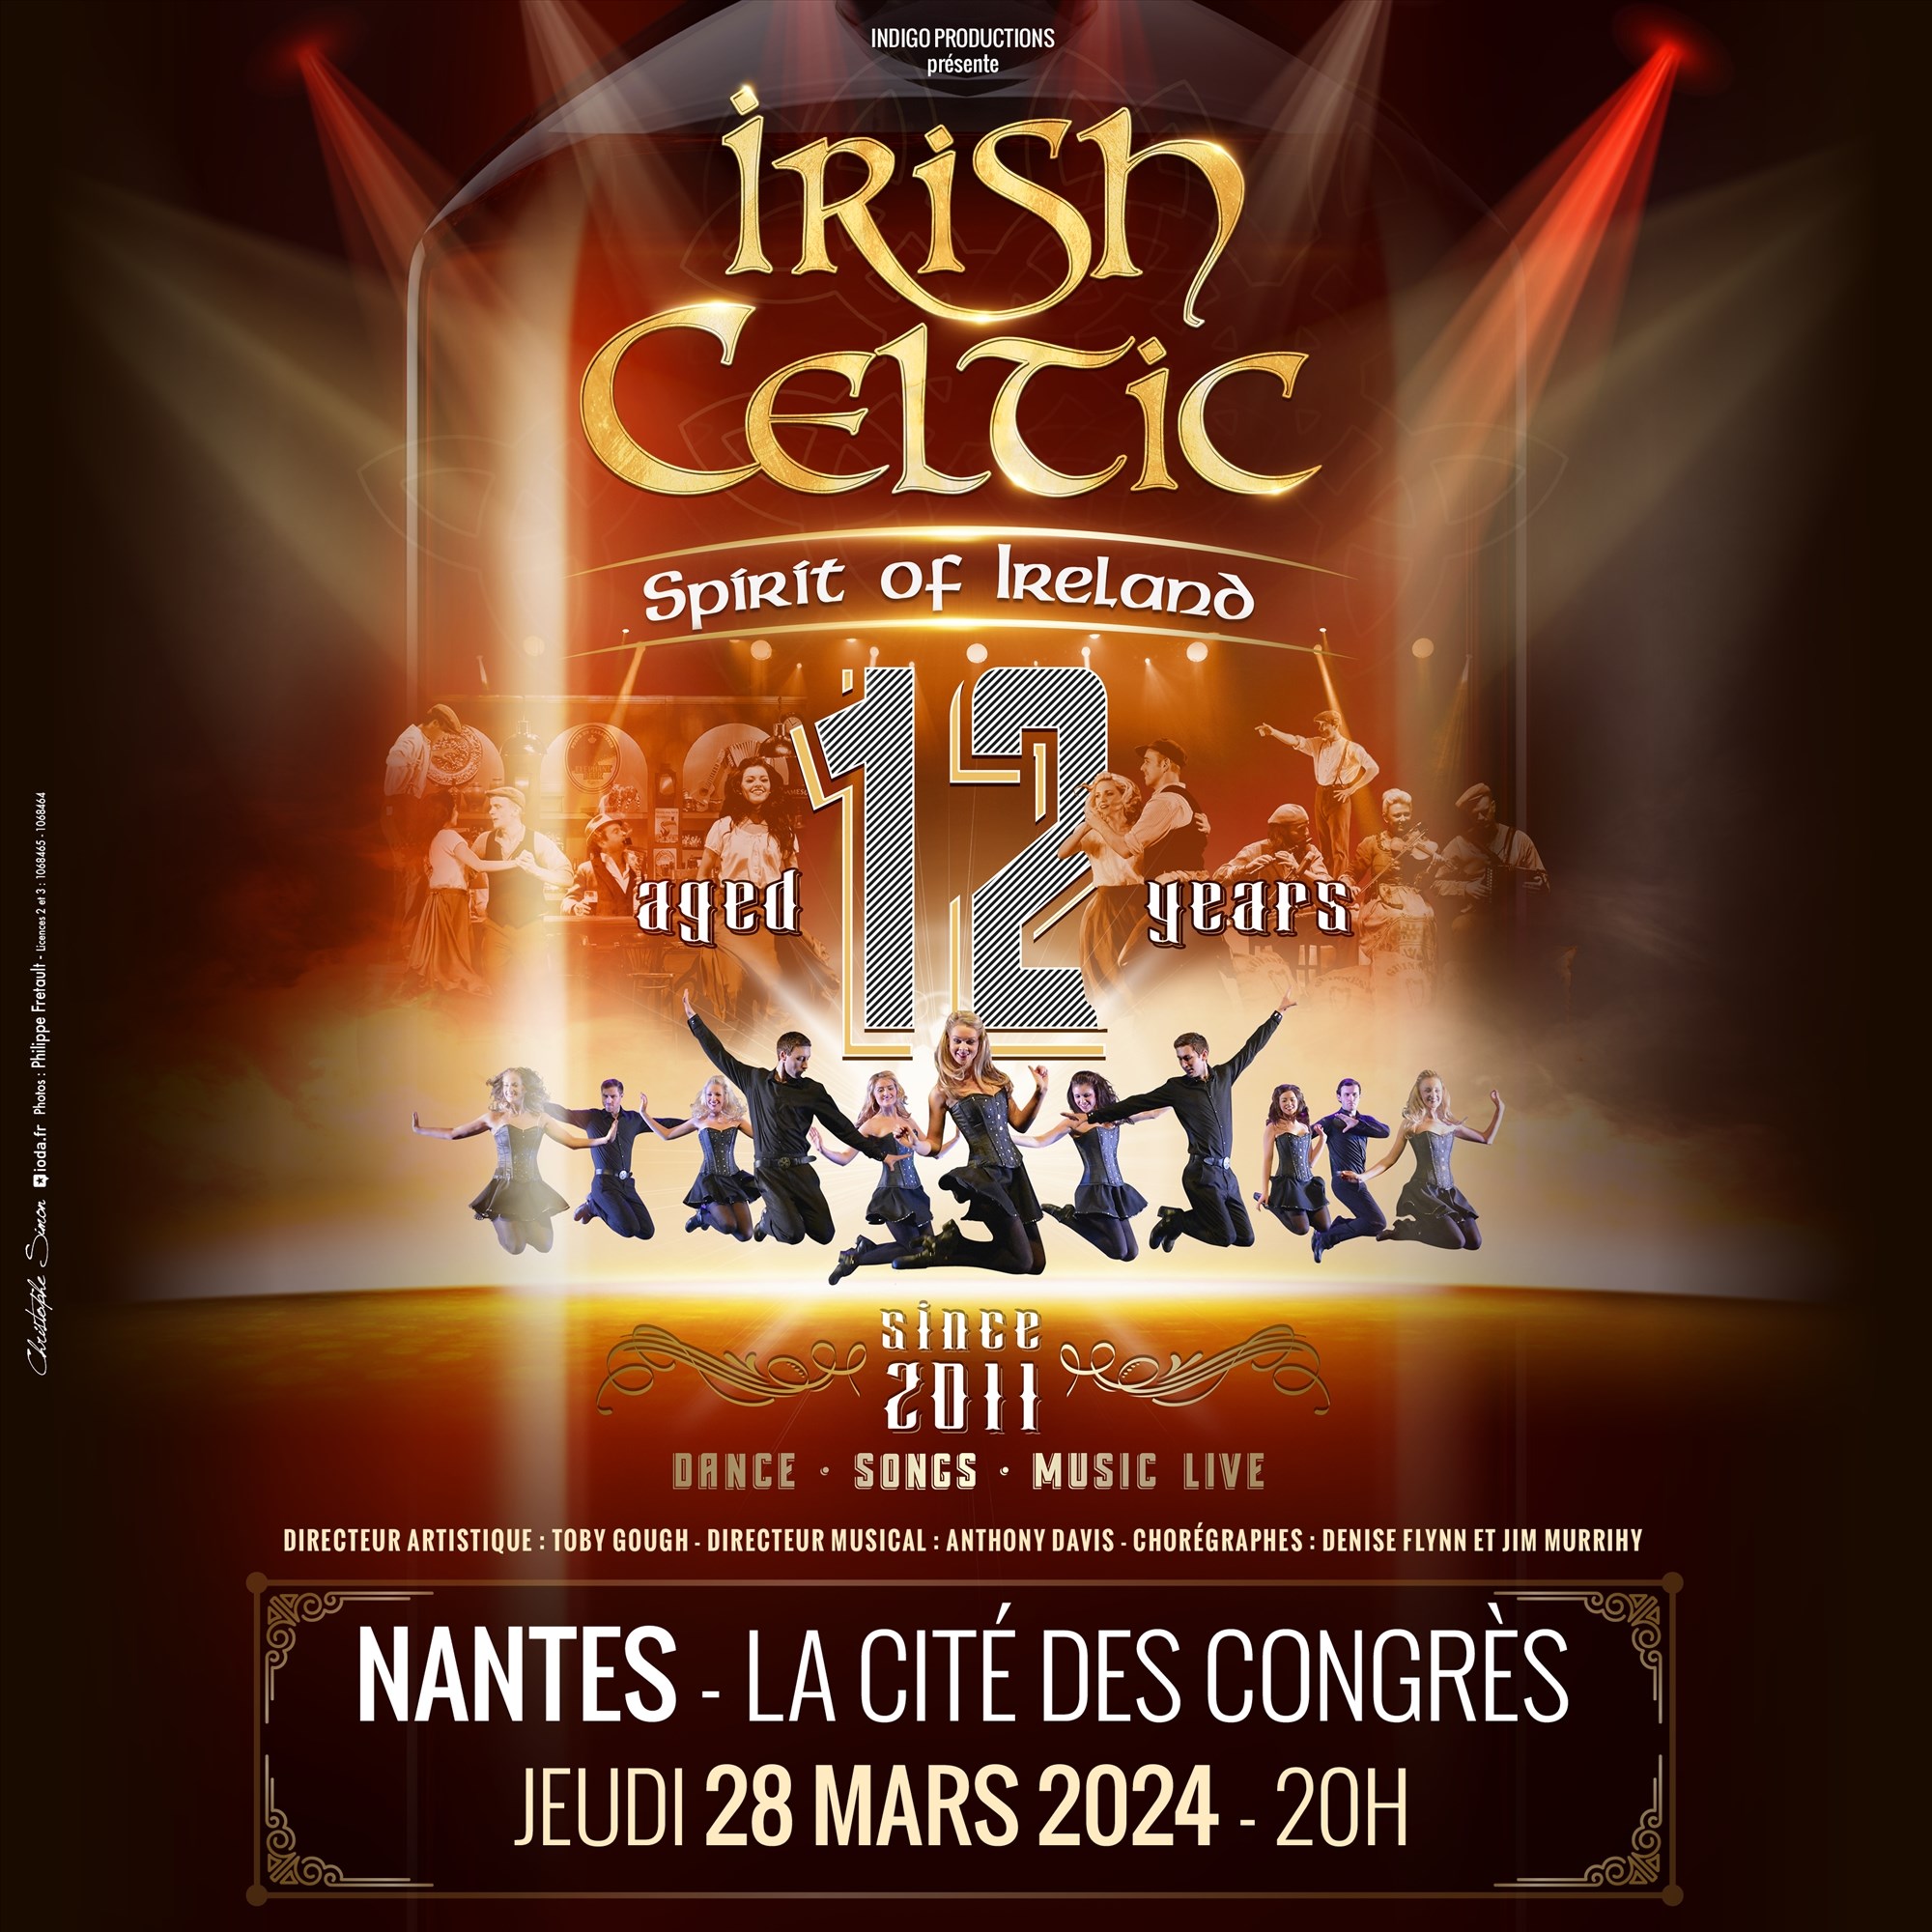 Irish Celtic Spirit of Ireland © Indigo Productions / Haracom